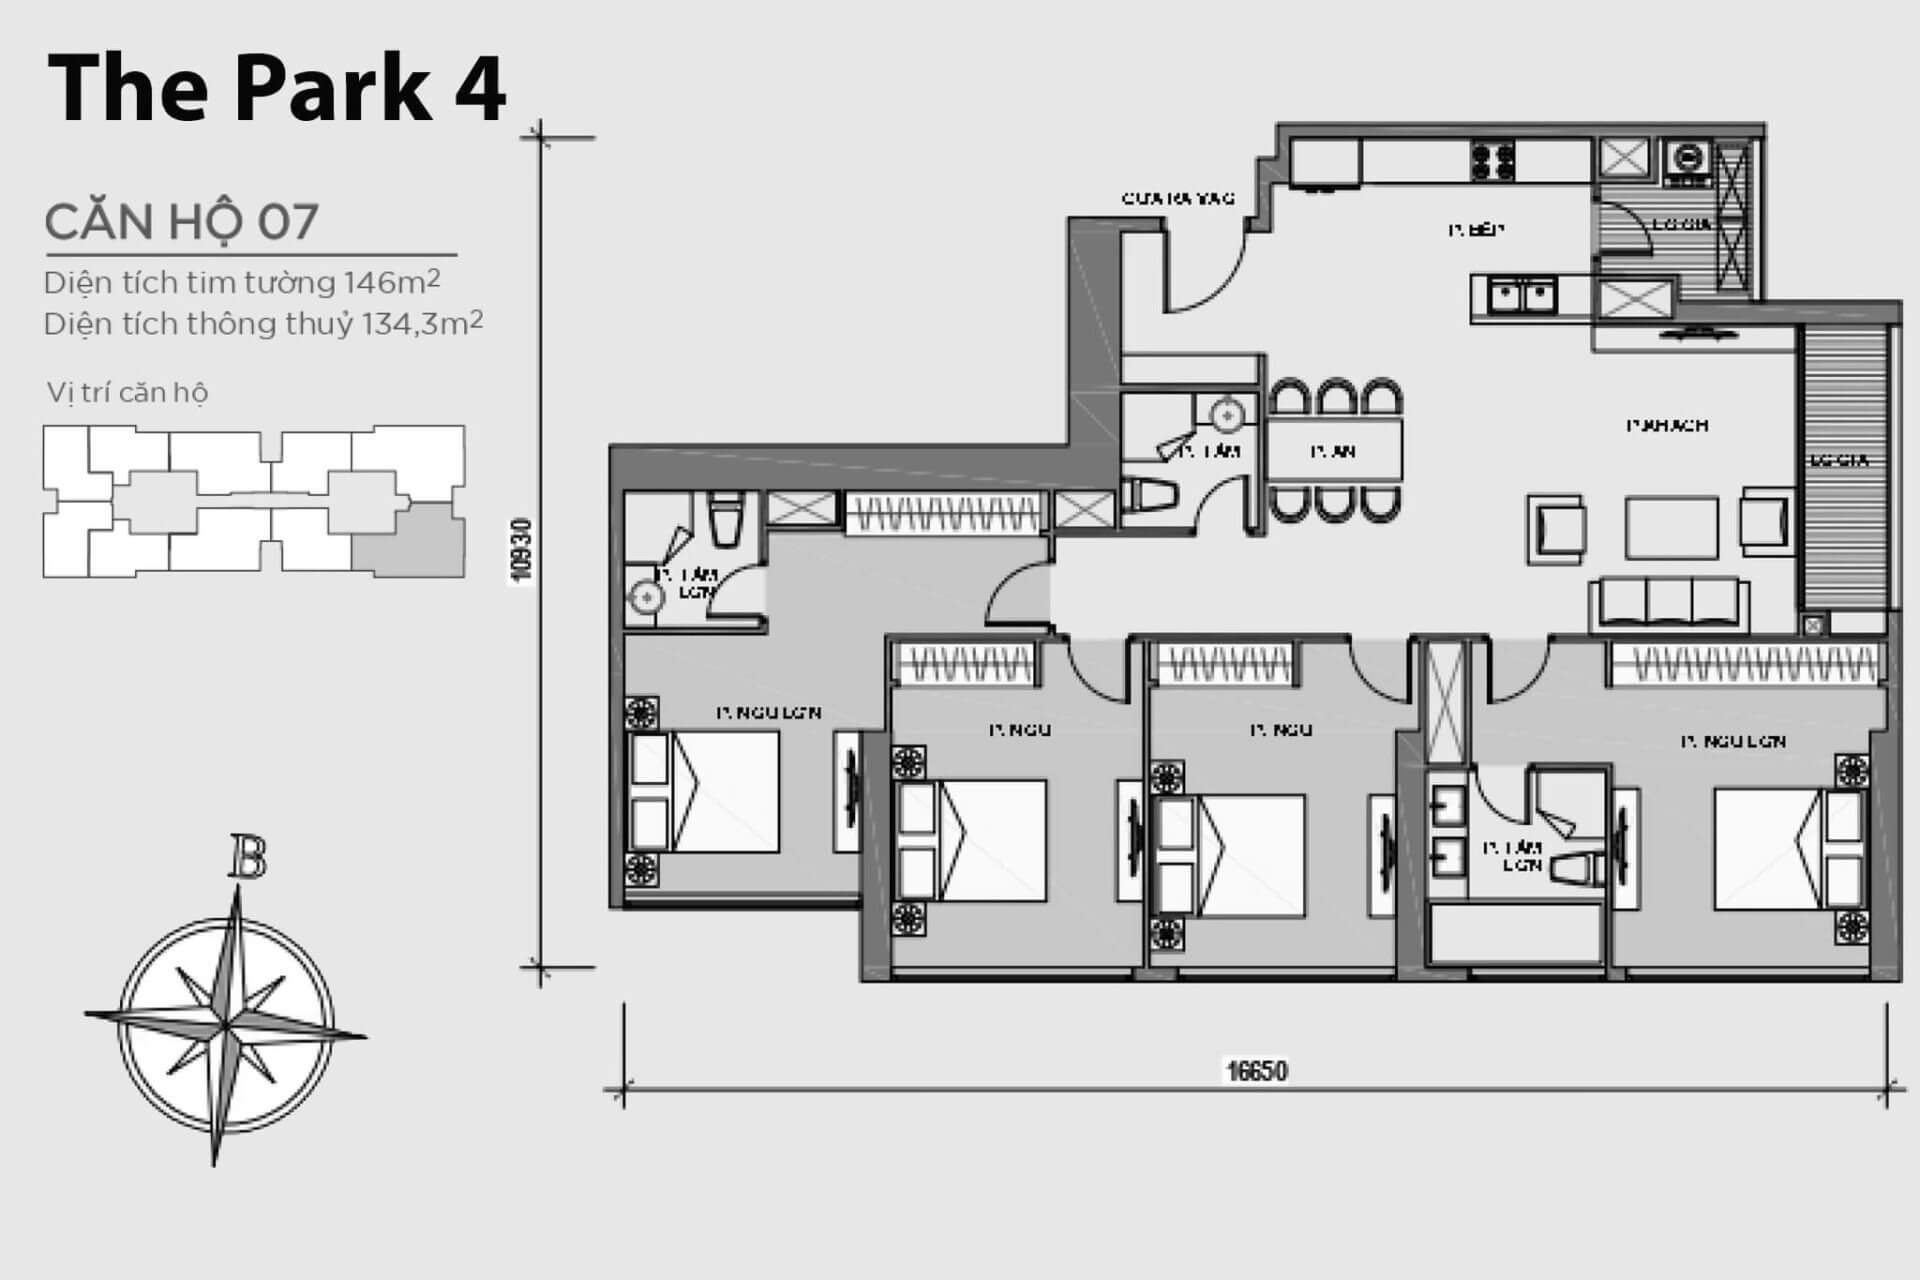 mặt bằng layout căn hộ số 07 Park 4 Vinhomes Central Park